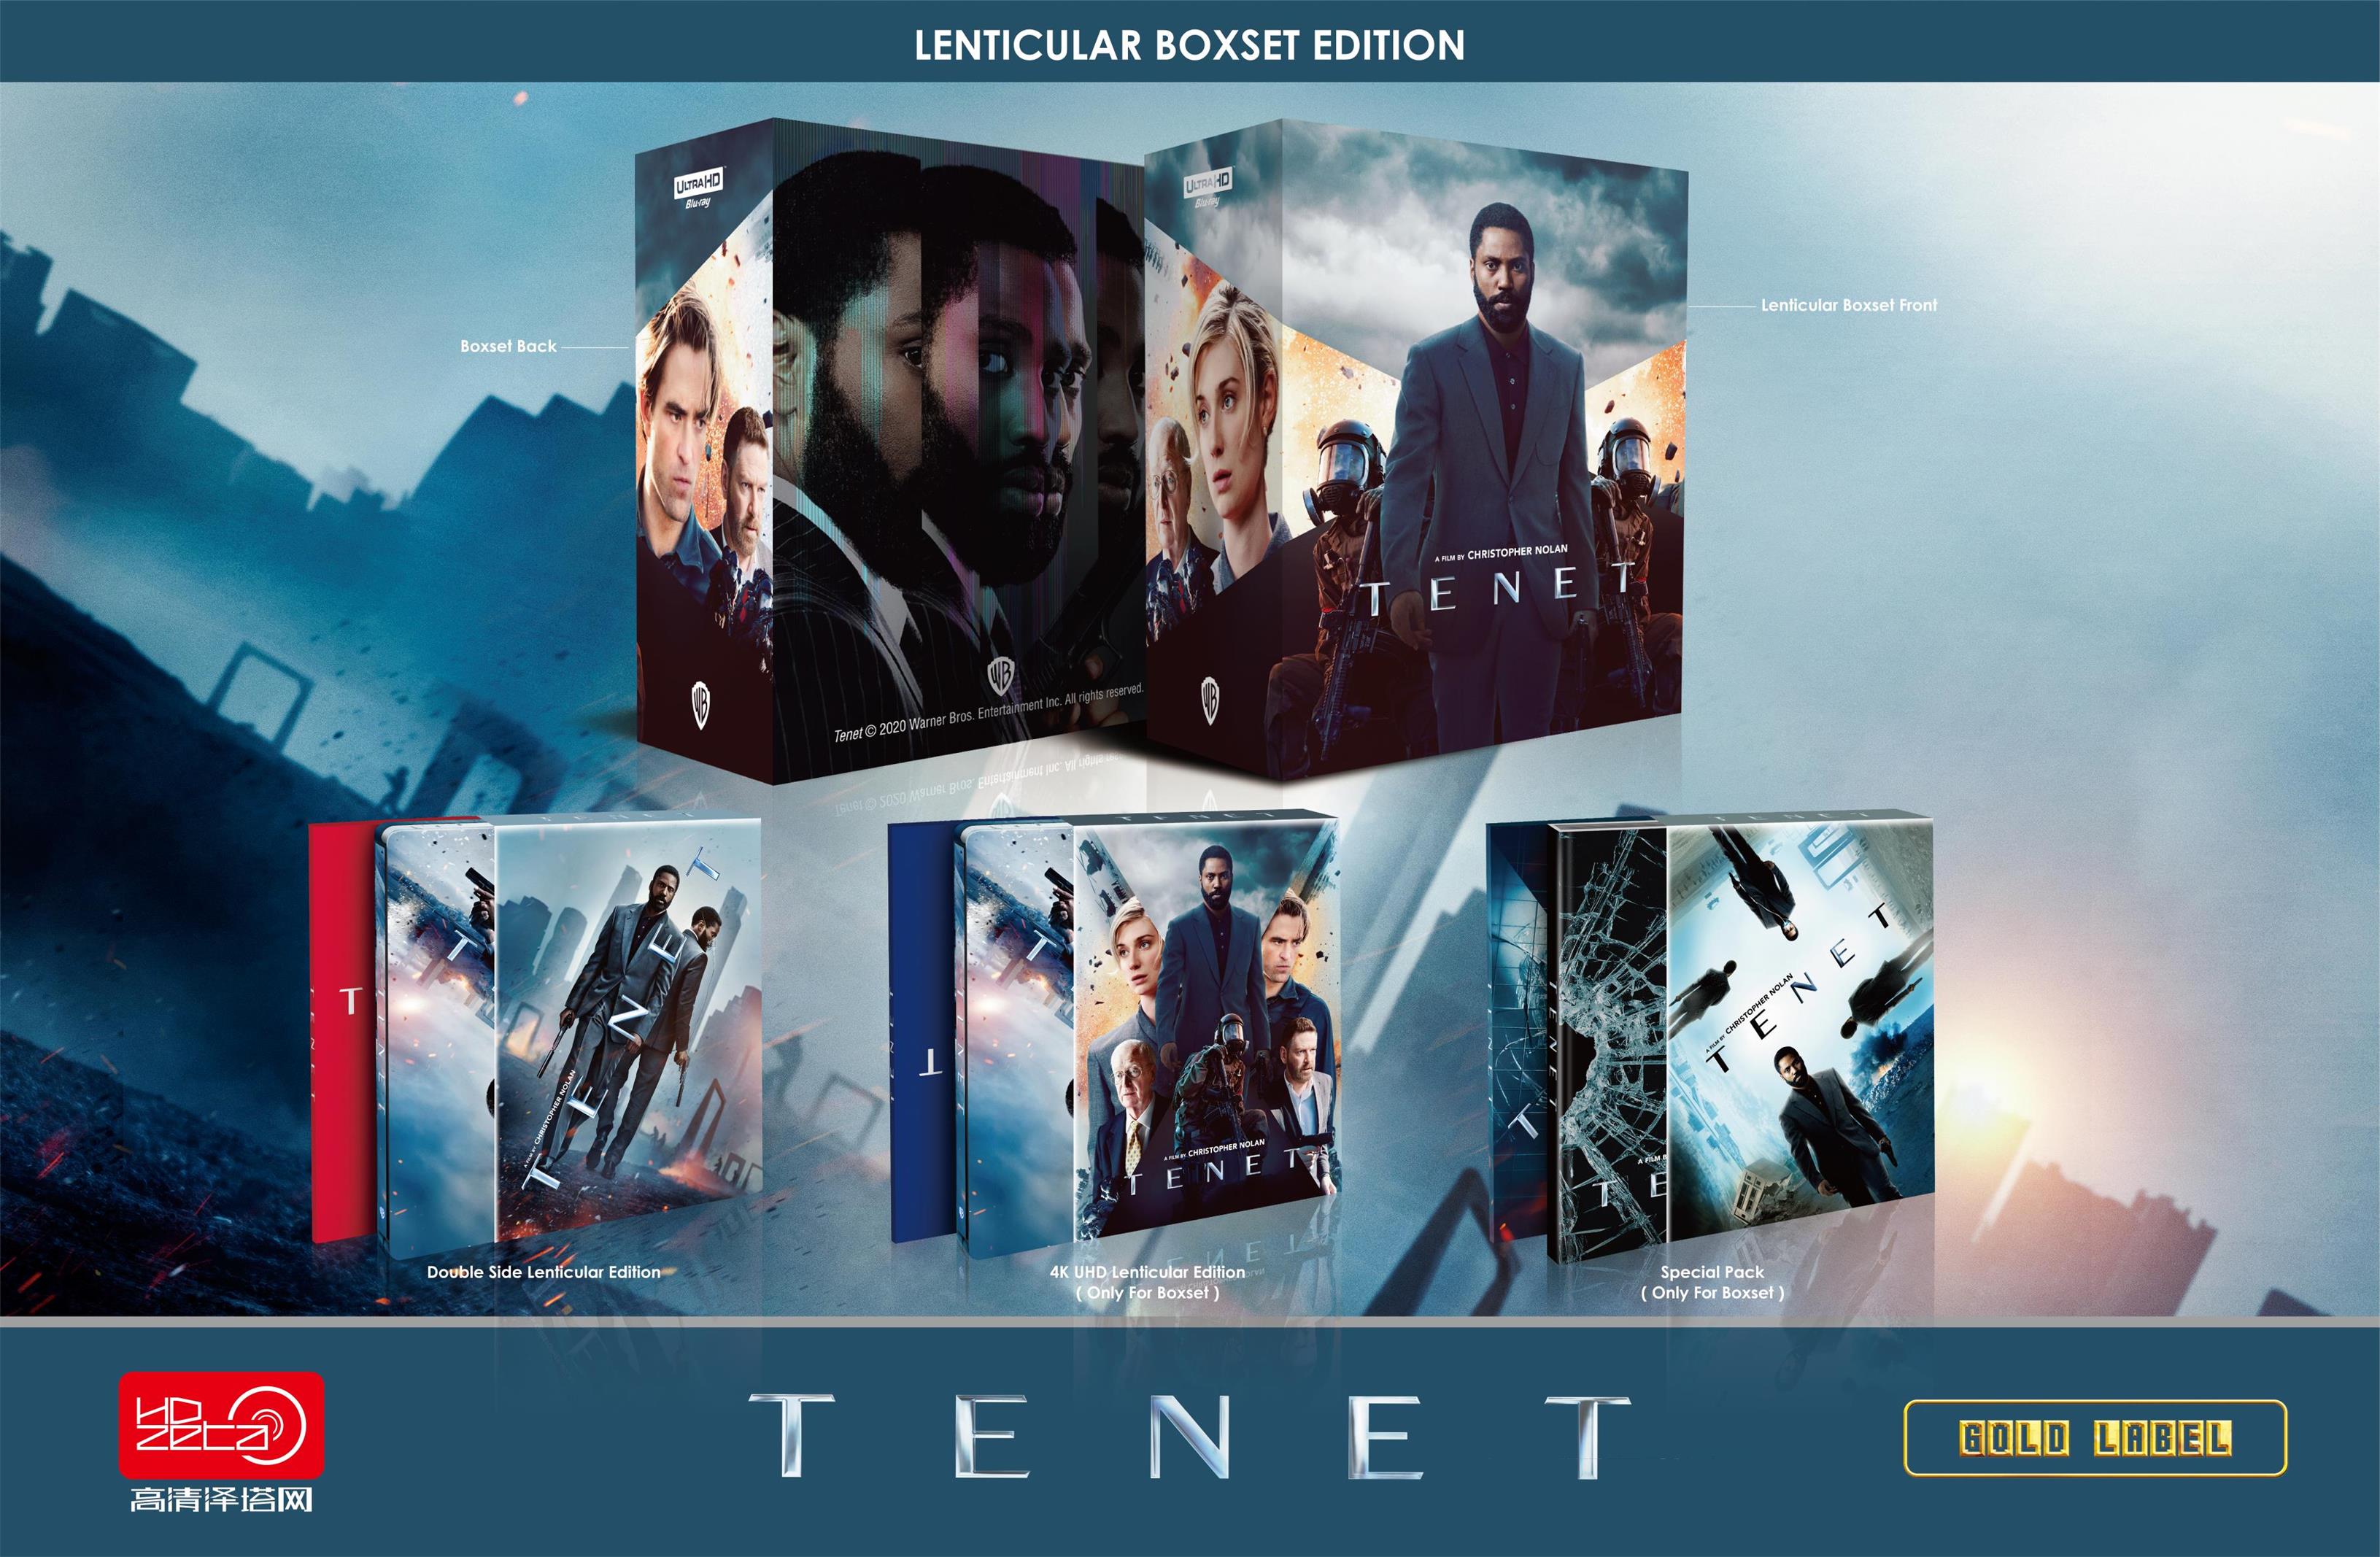 Tenet HDzeta Exclusive Lenticular Boxset Edition